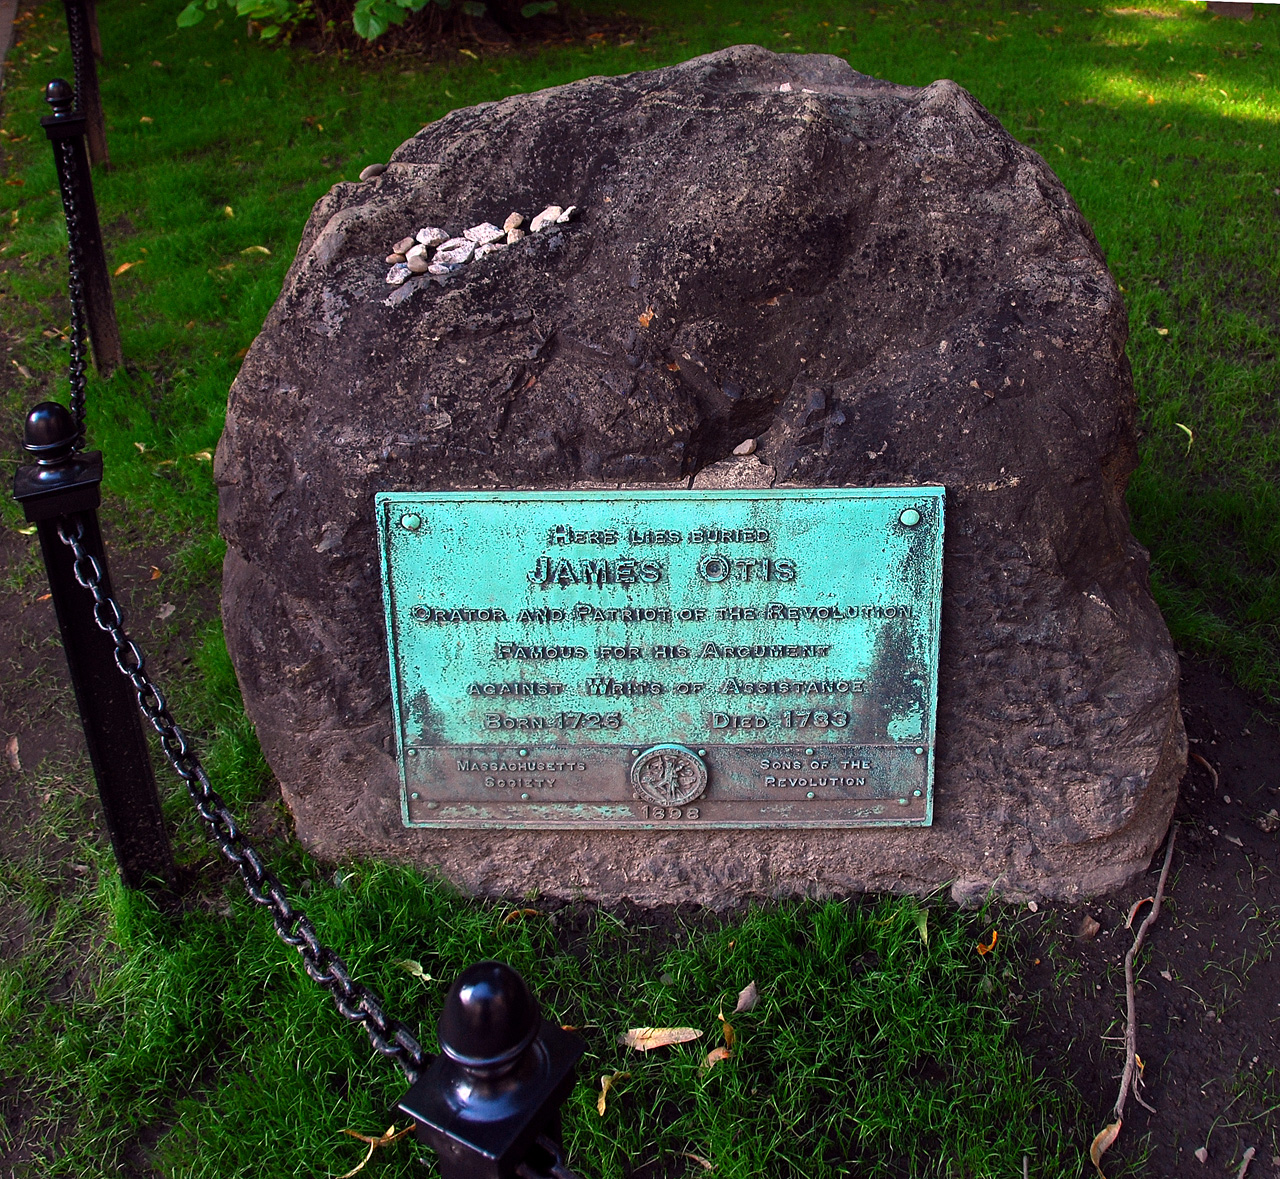 2011-09-11, 016, James Otis, Freedom Trail, Boston, MA